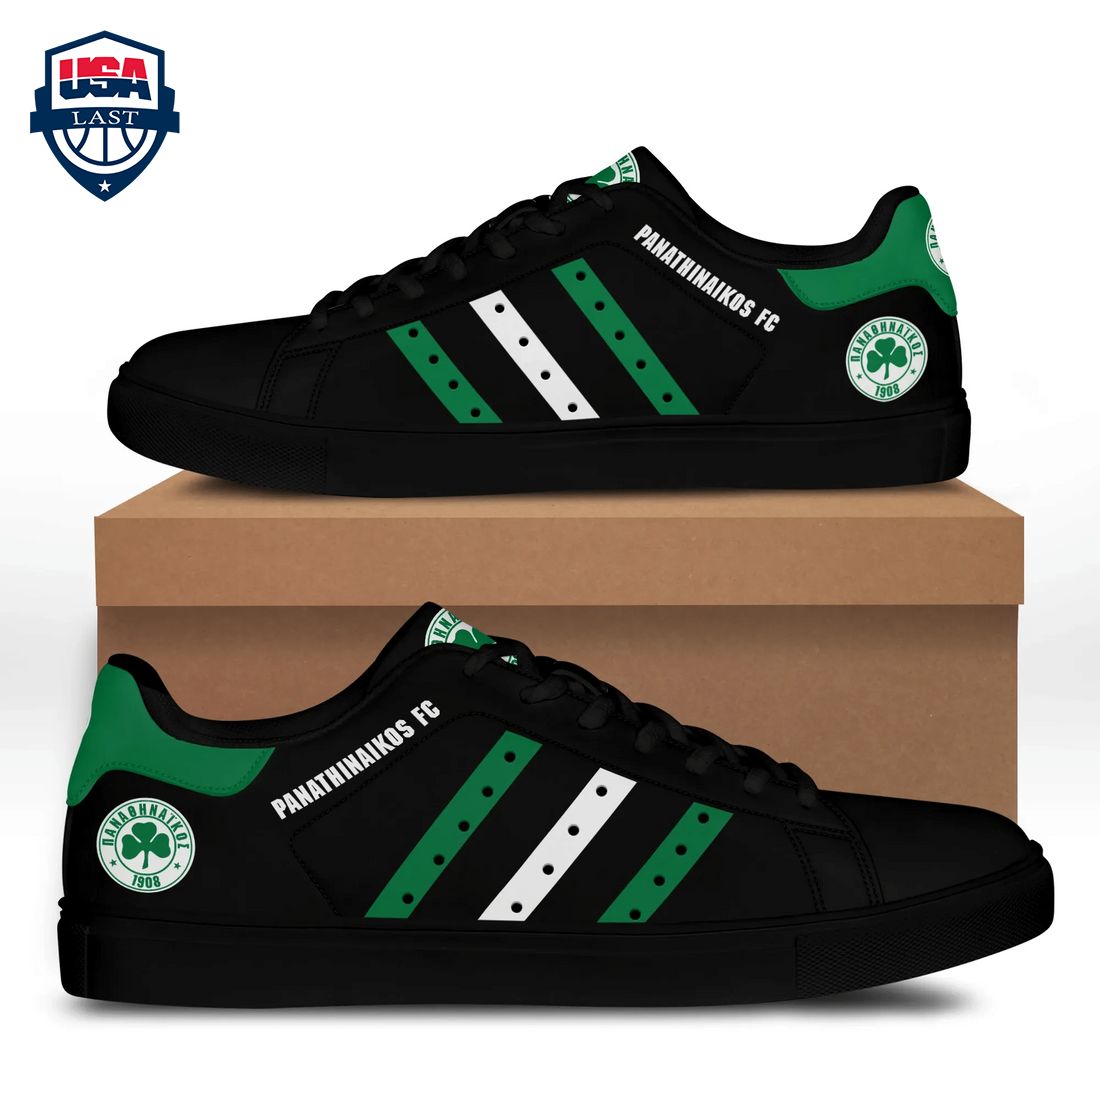 panathinaikos-fc-green-white-stripes-style-1-stan-smith-low-top-shoes-1-5Jxtg.jpg